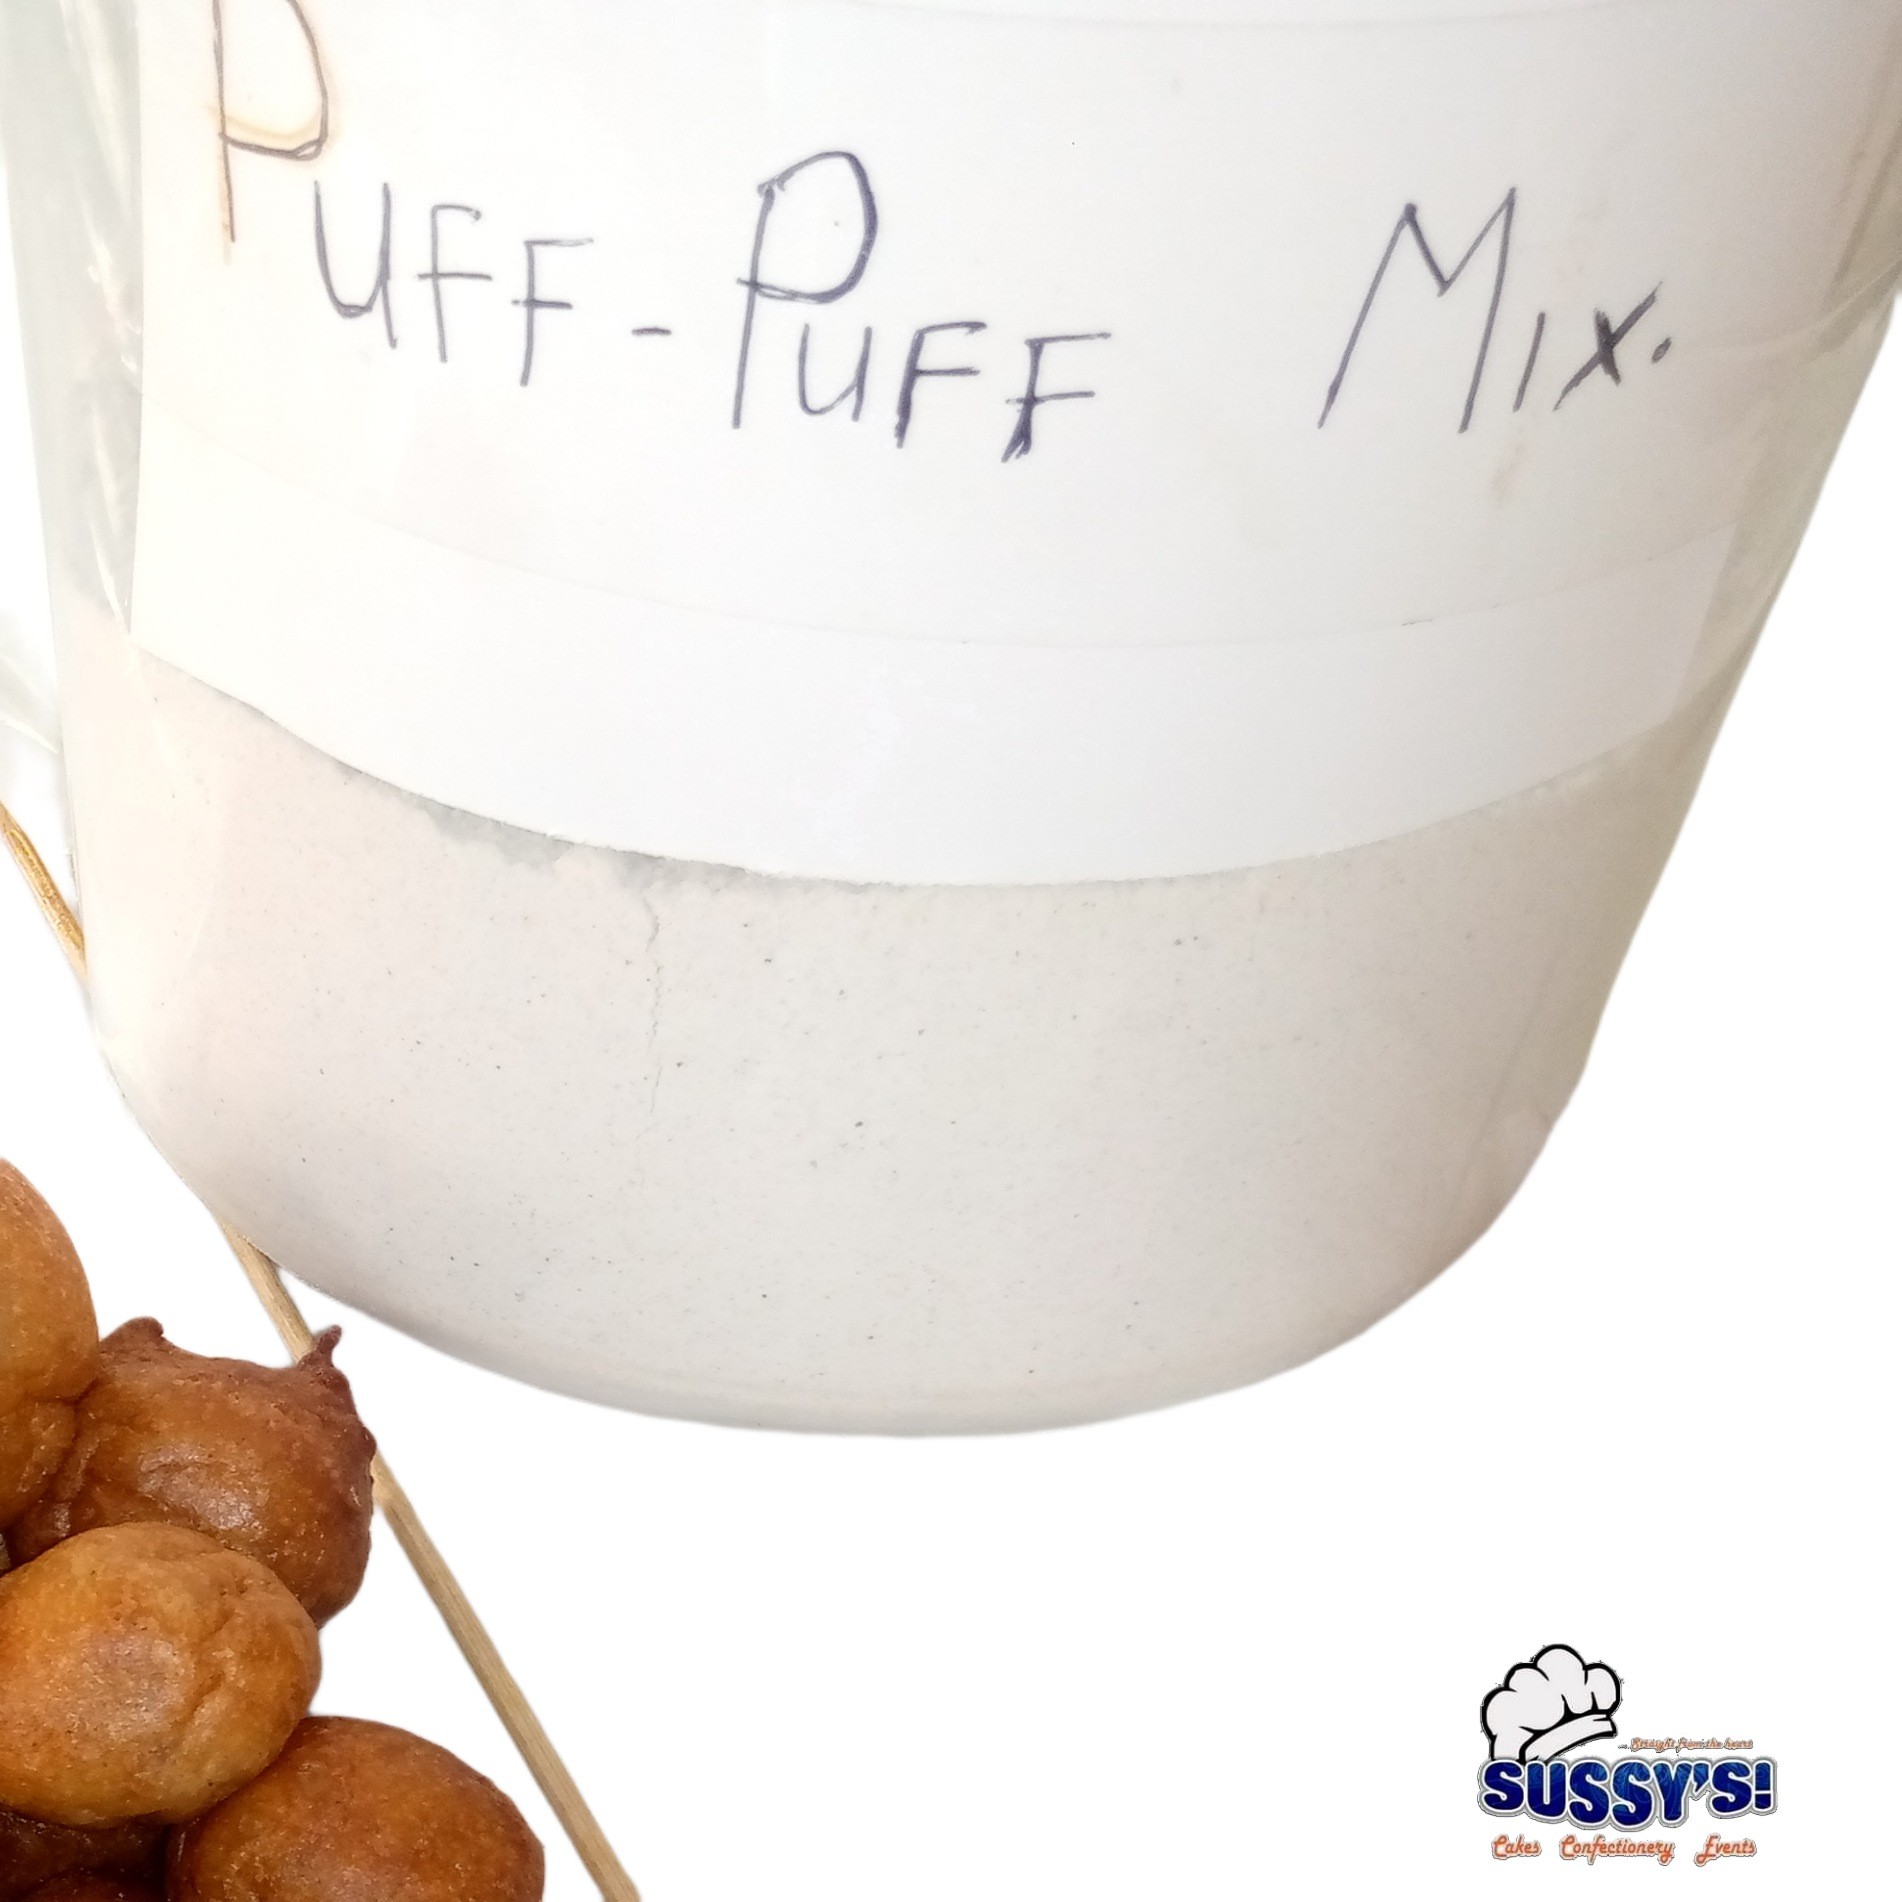 Instant Perfect Puff-puff Mix recipe